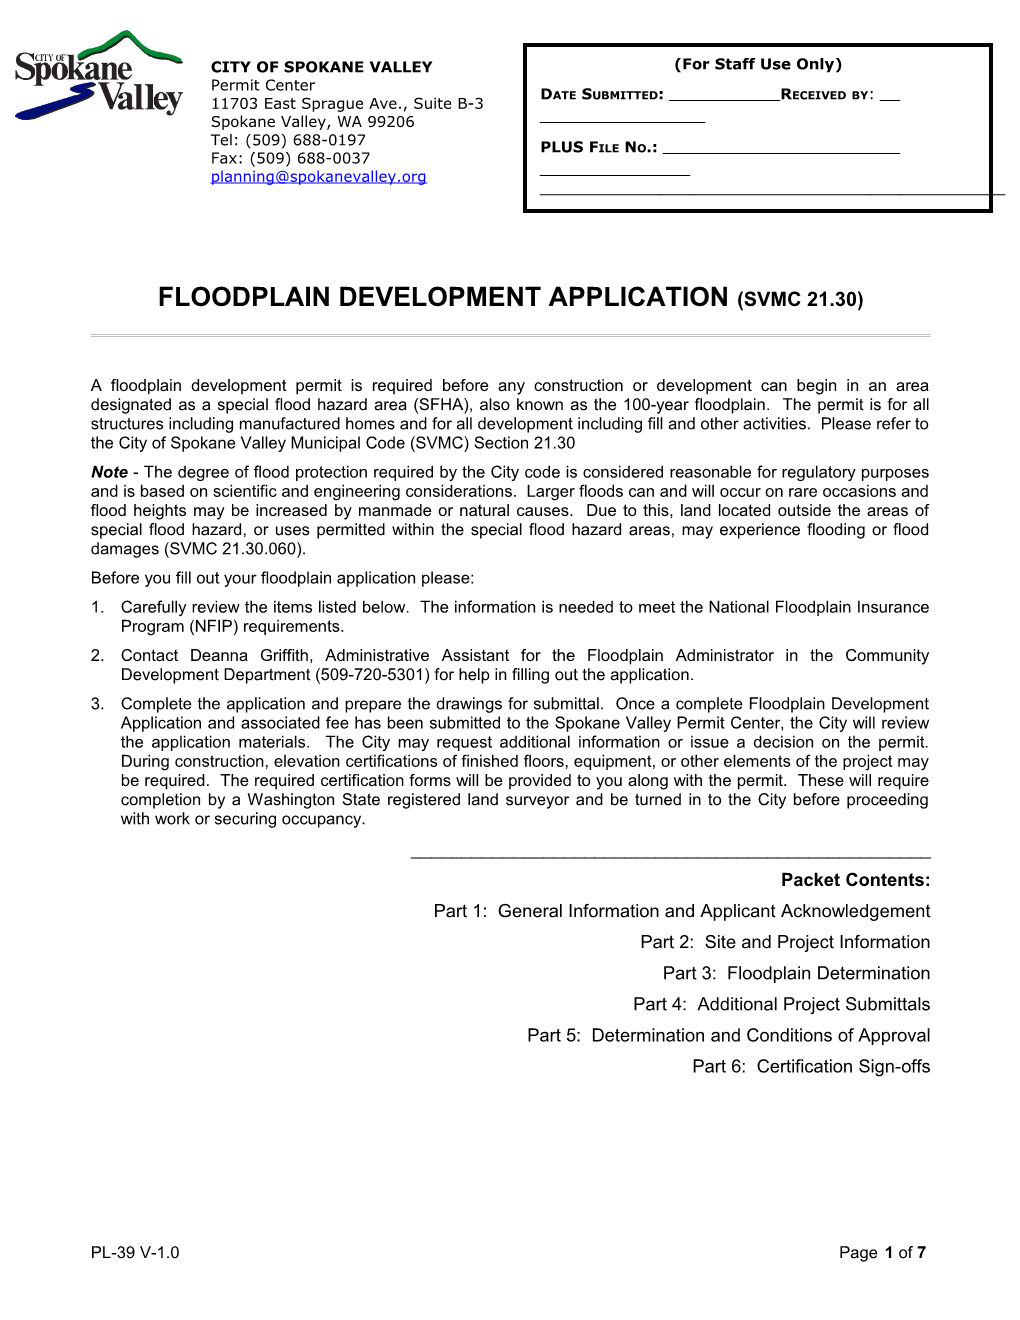 Floodplain Development Application (Svmc 21.30)